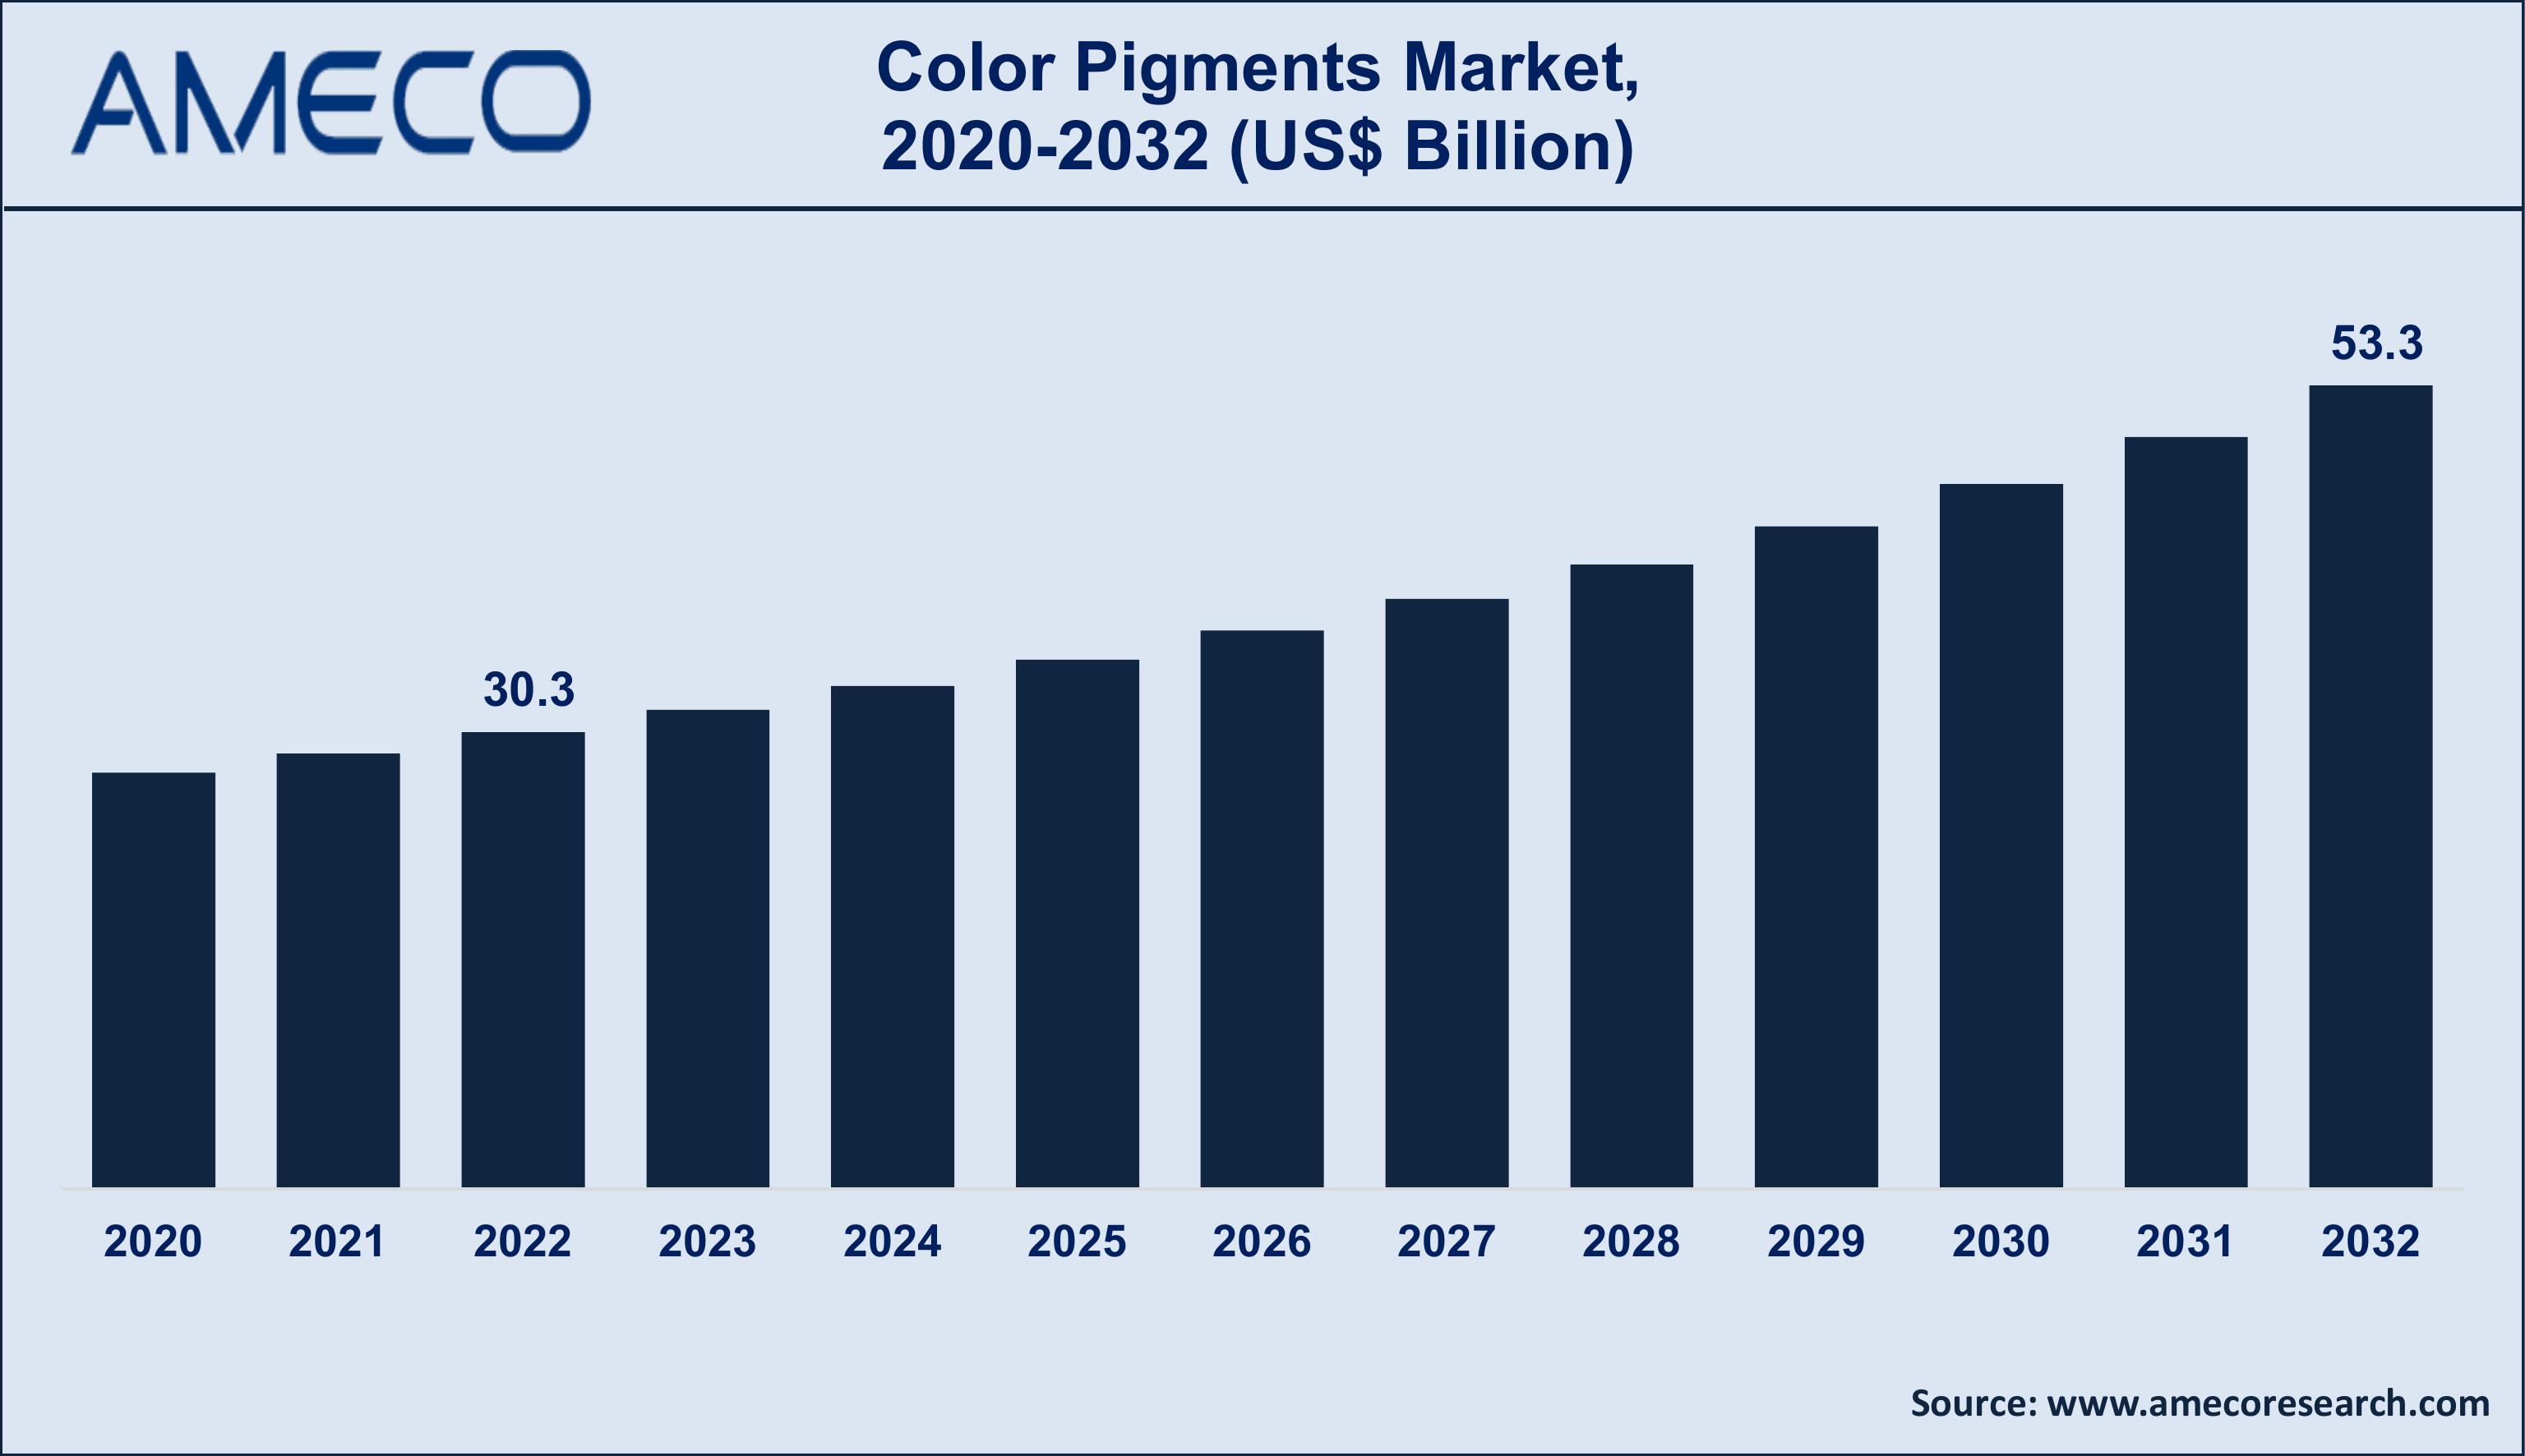 Color Pigments Market Trends